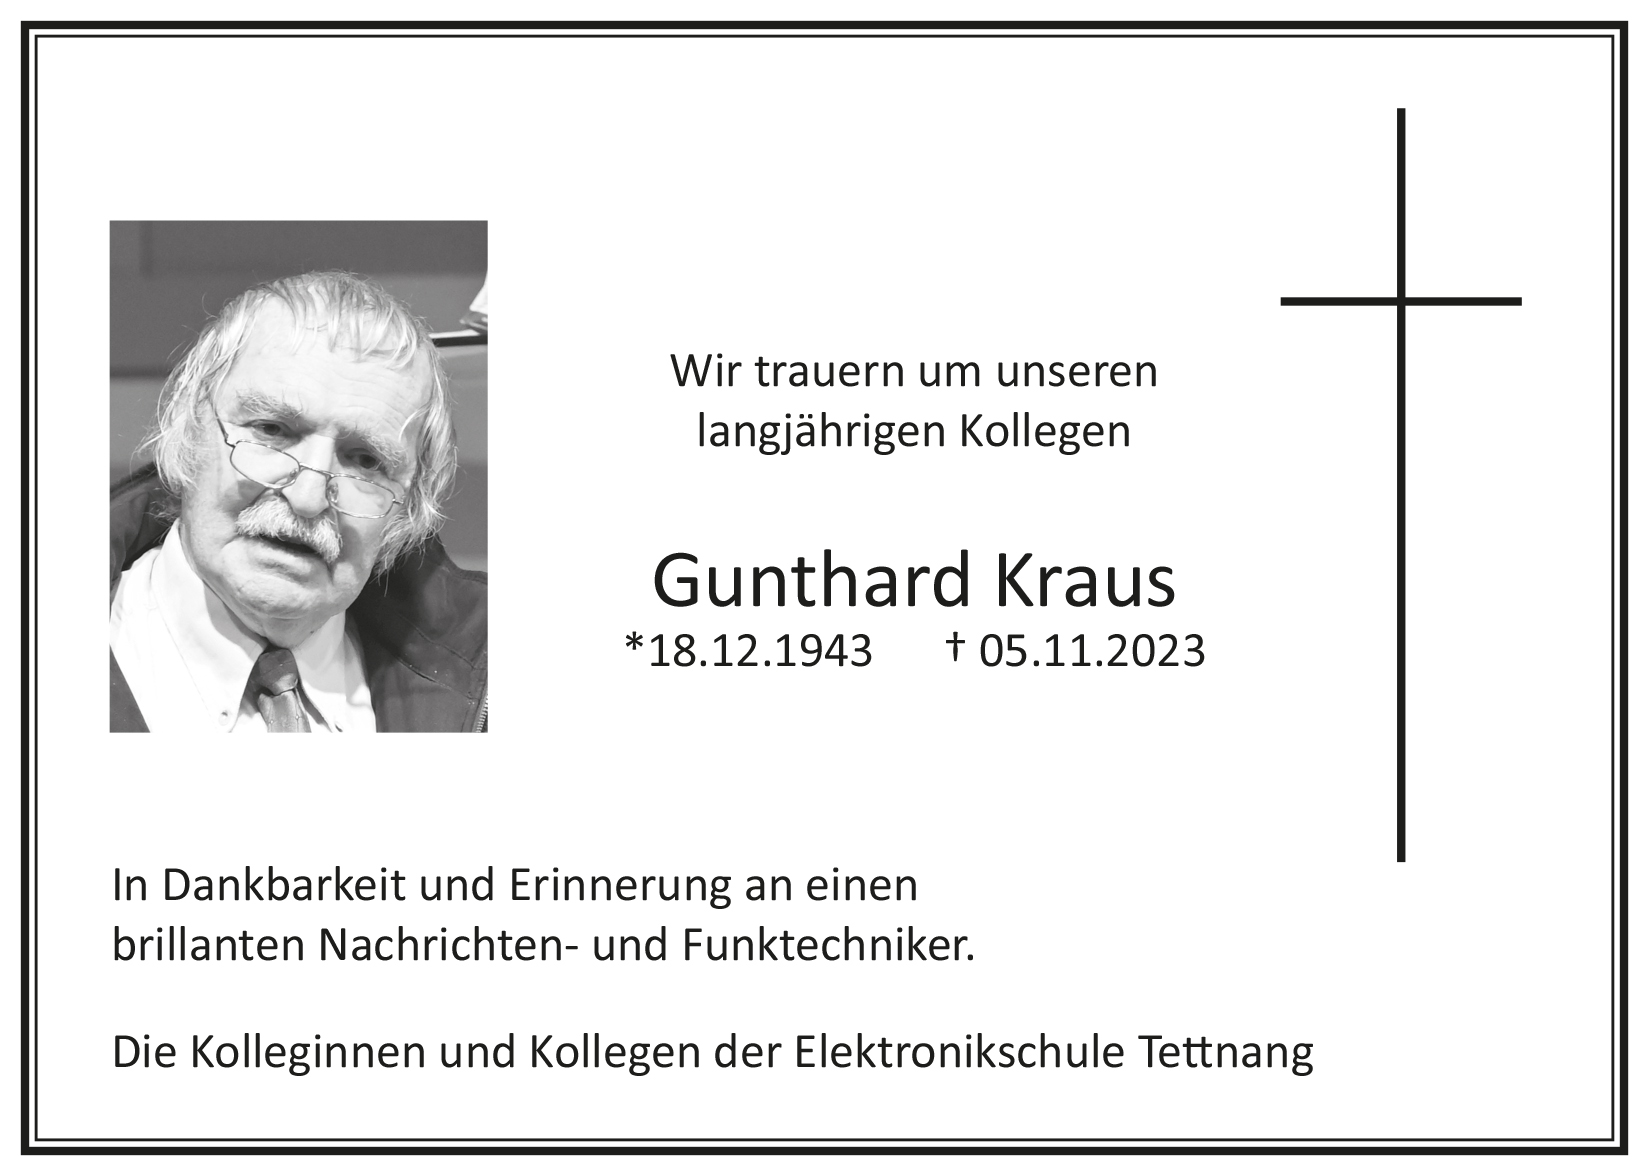 Gunthard Kraus